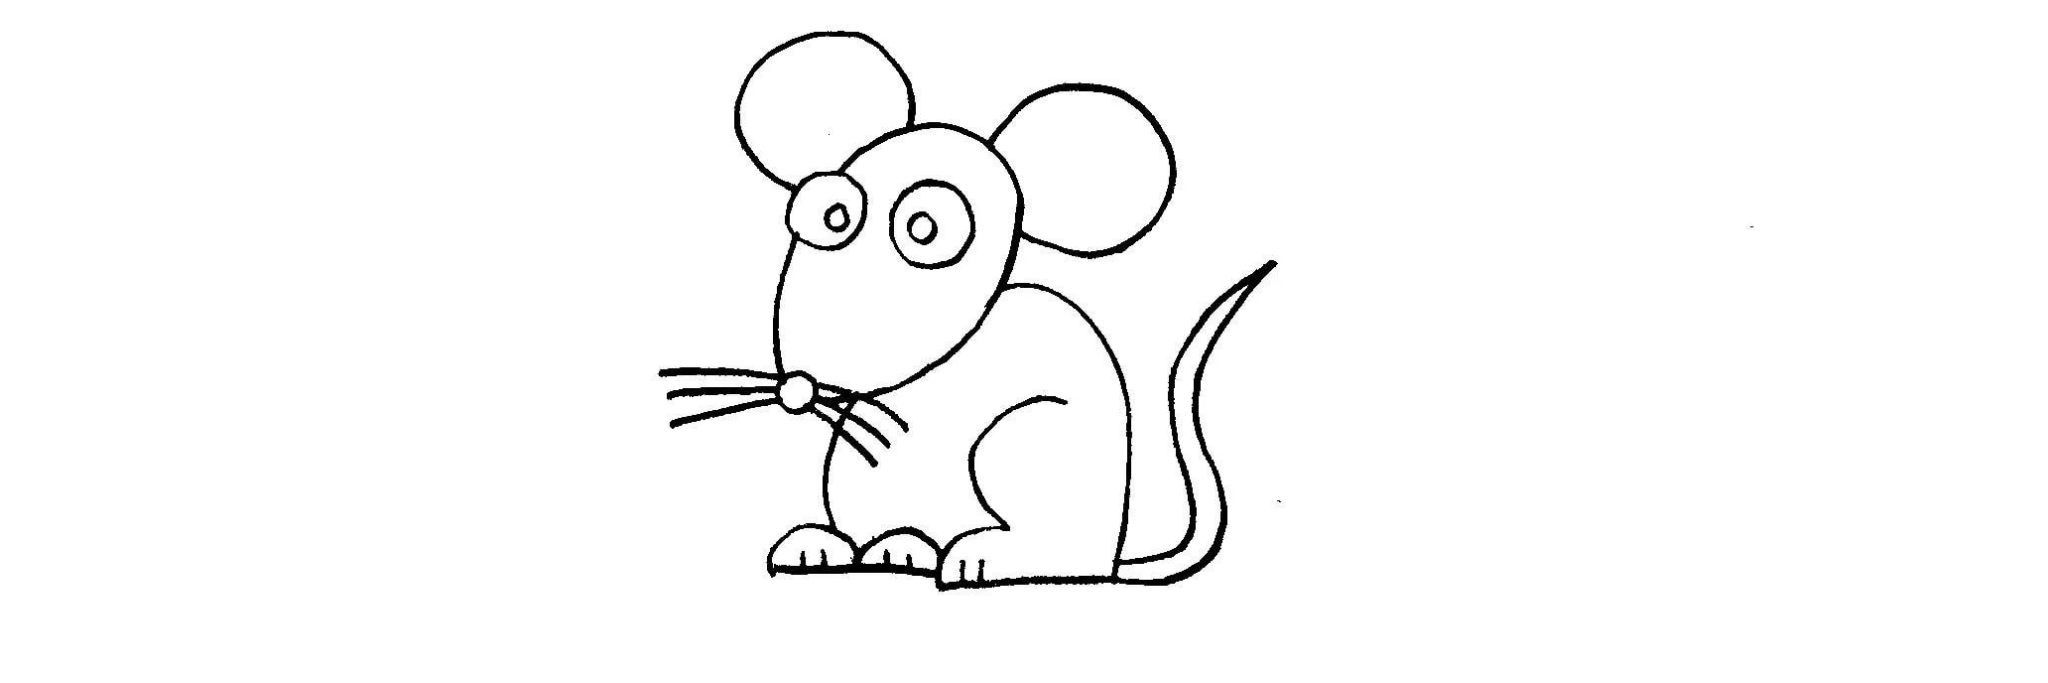 Мышь карандашом для детей